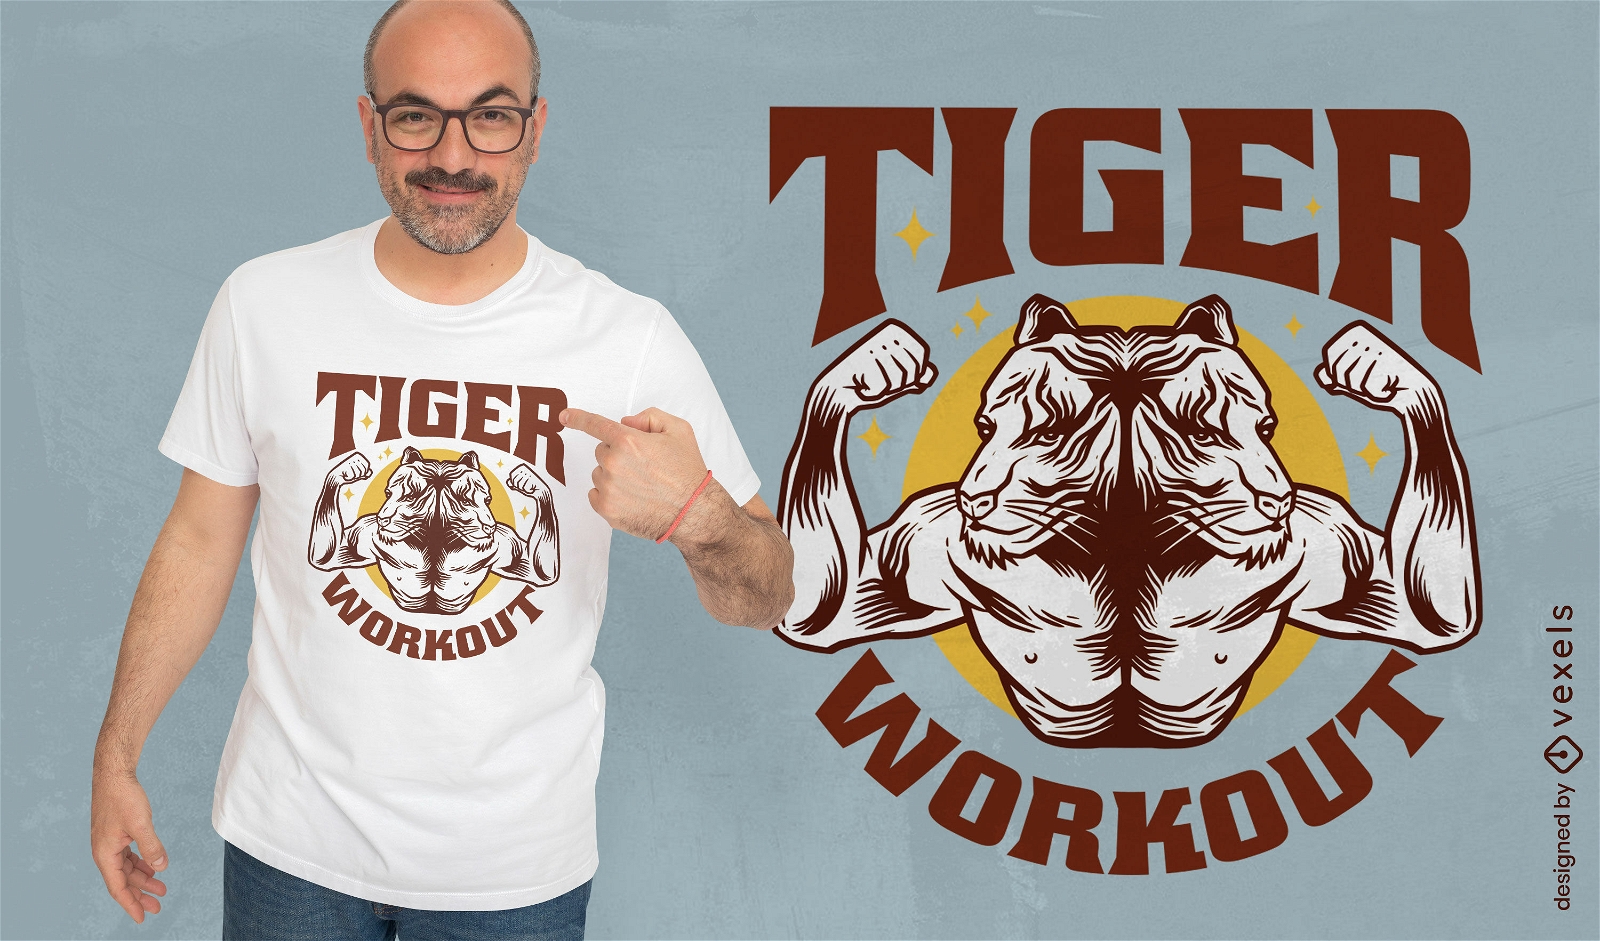 Dise?o de camiseta deportiva de tigre con m?sculos.